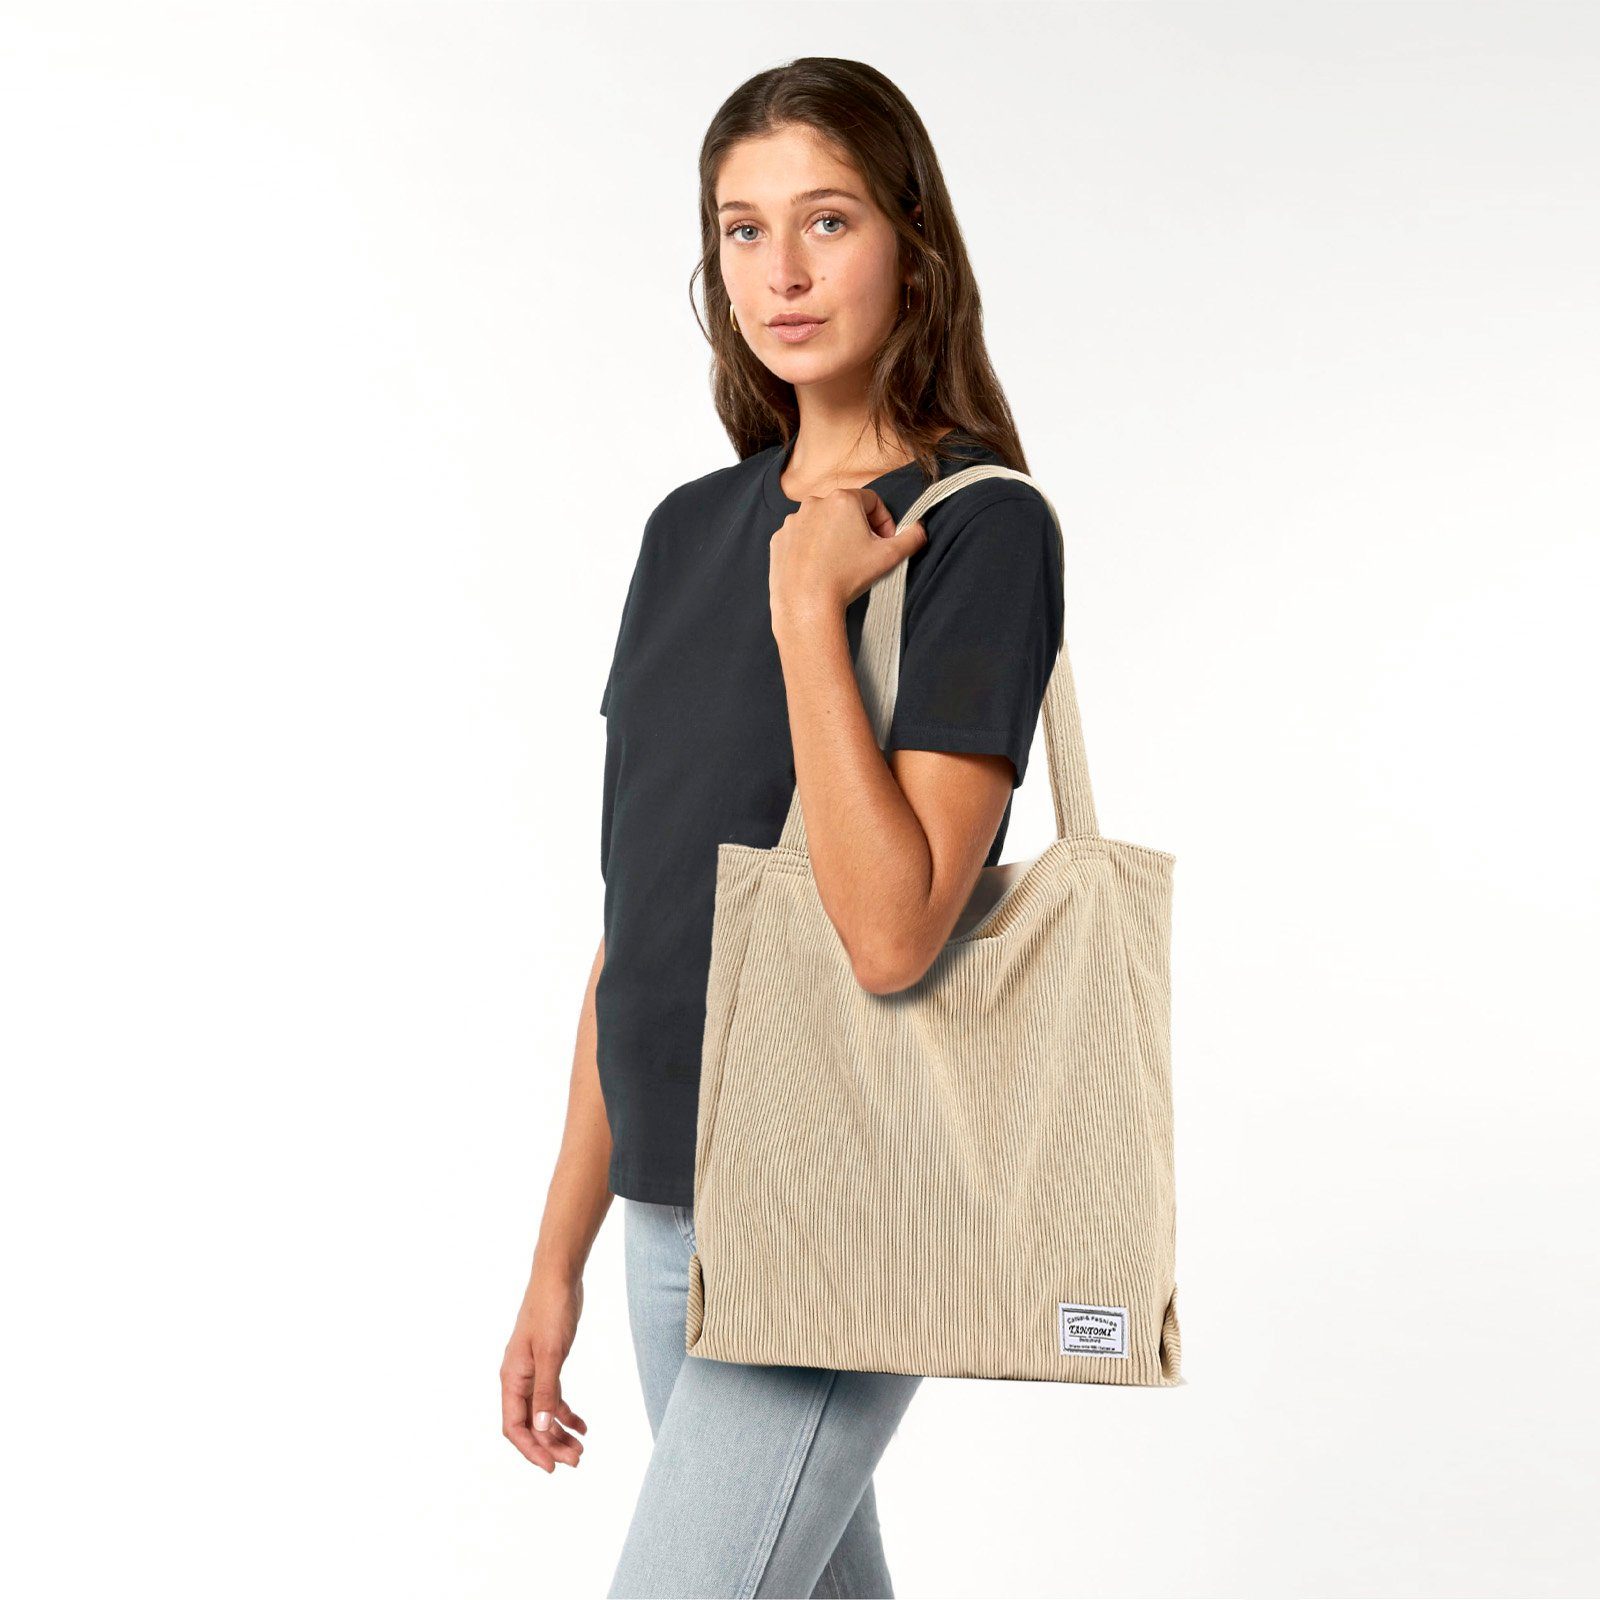 TAN.TOMI Henkeltasche Handtasche, Damenhandtasche, mit Damen, Reißverschluss-Einkaufstasche Beige Cordtasche Tasche